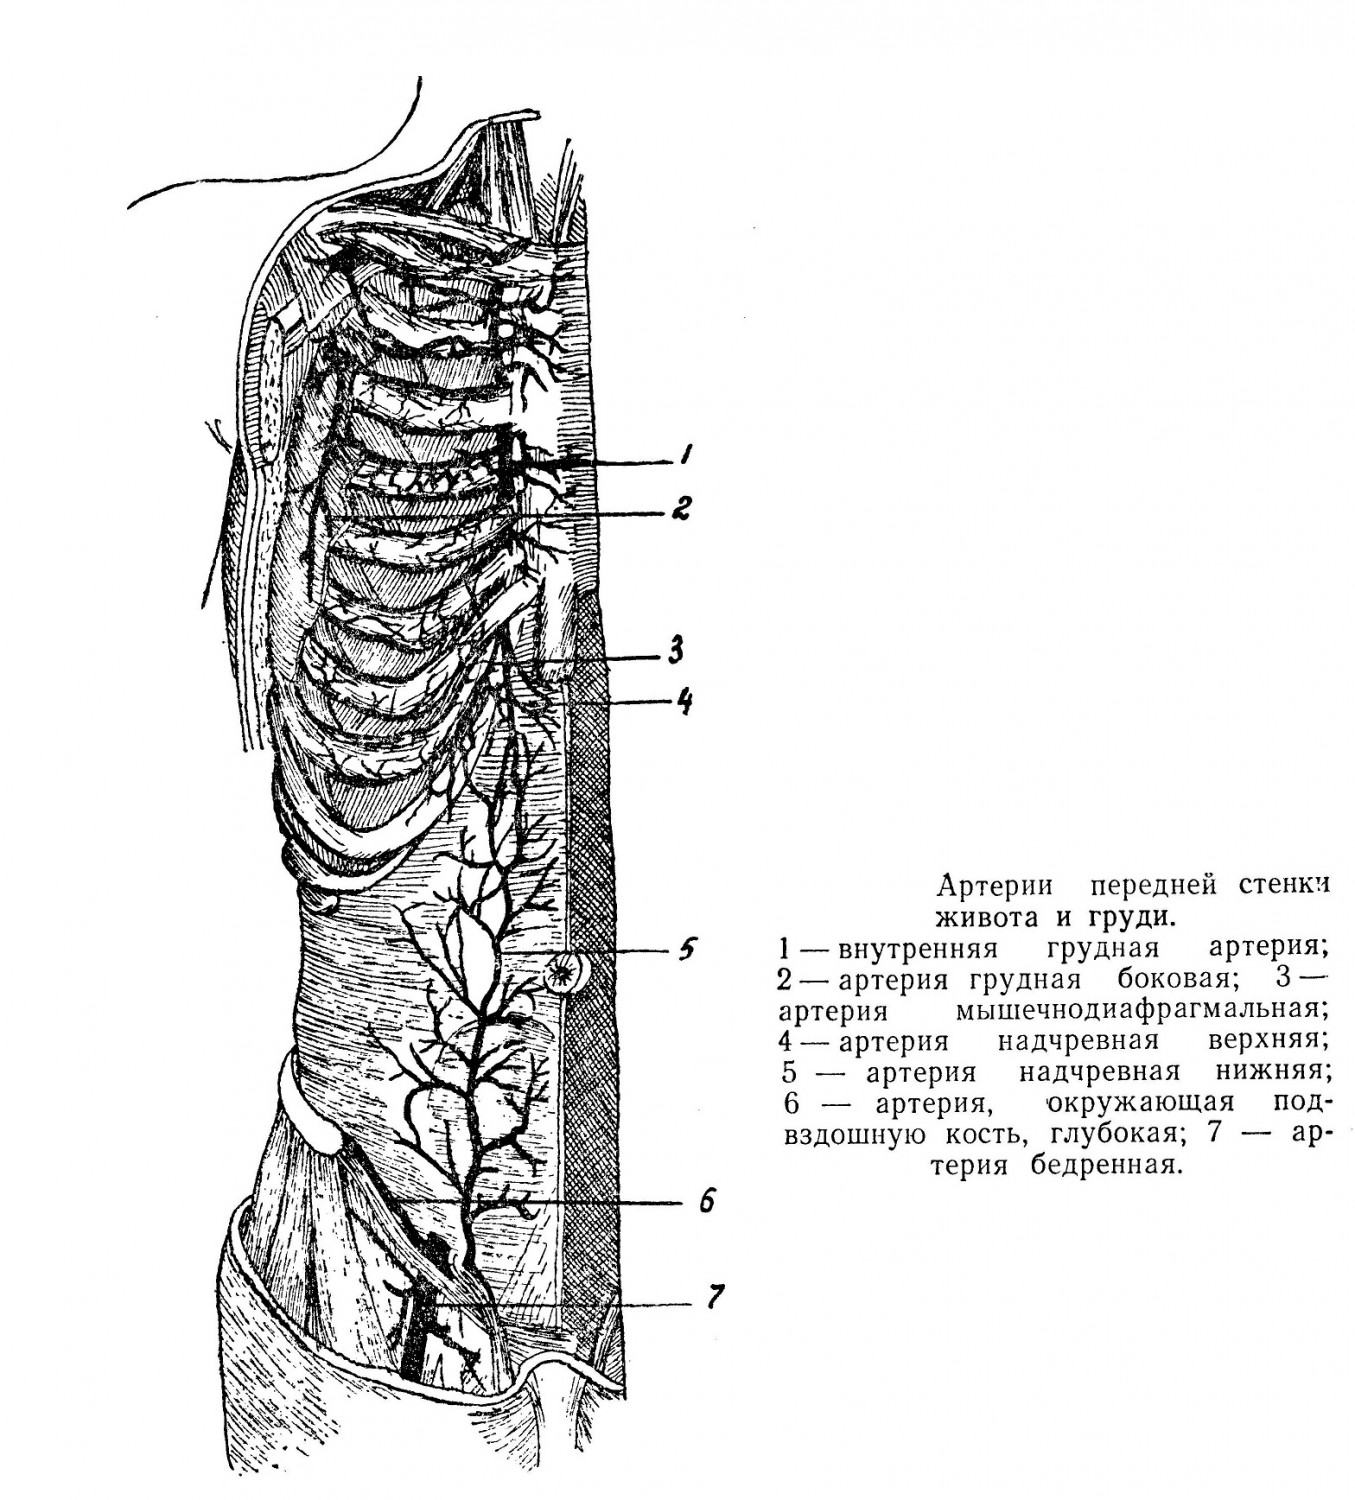 Артерии передней стенки живота и груди